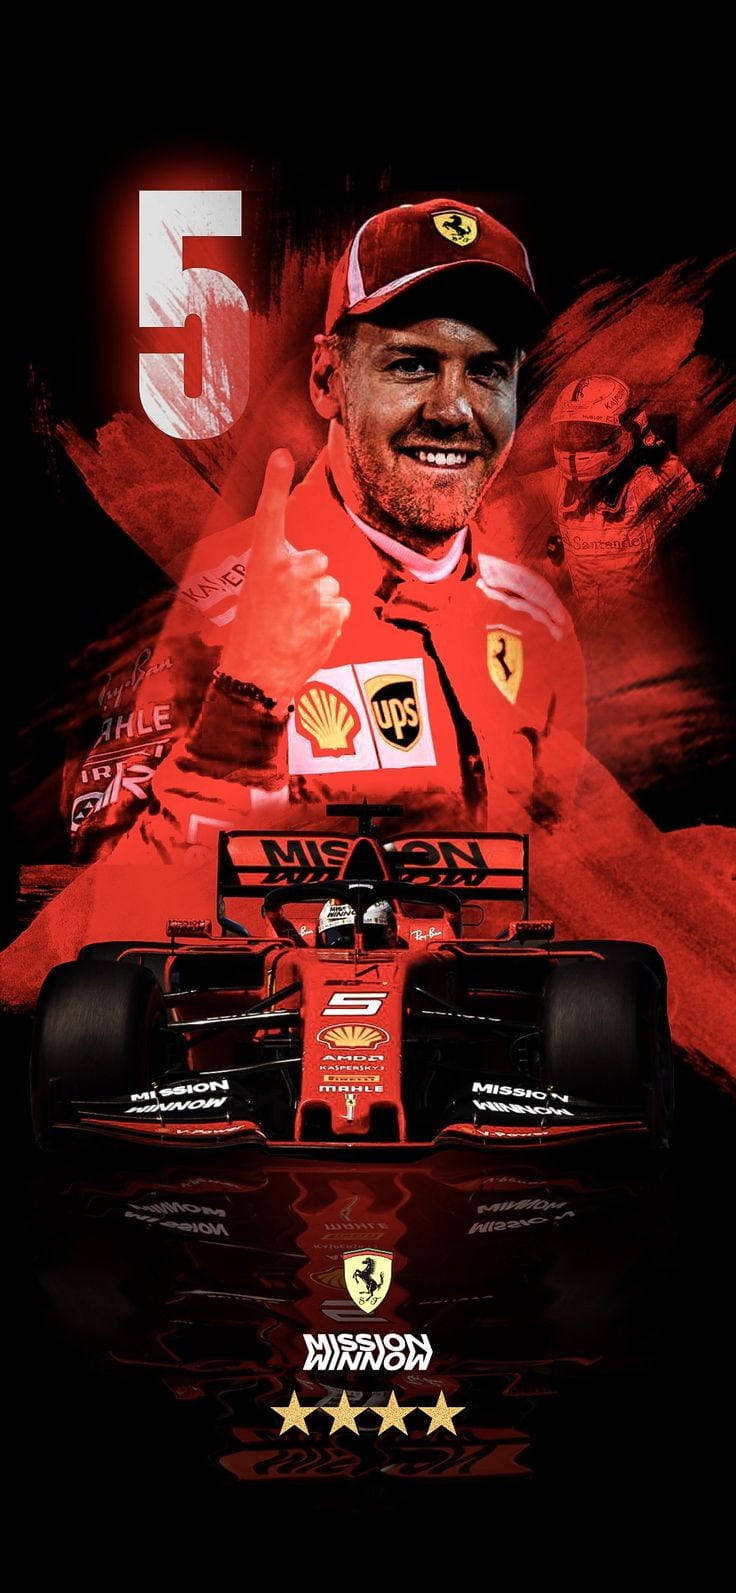 F1 Racer Sebastian Vettel With Car Wallpaper